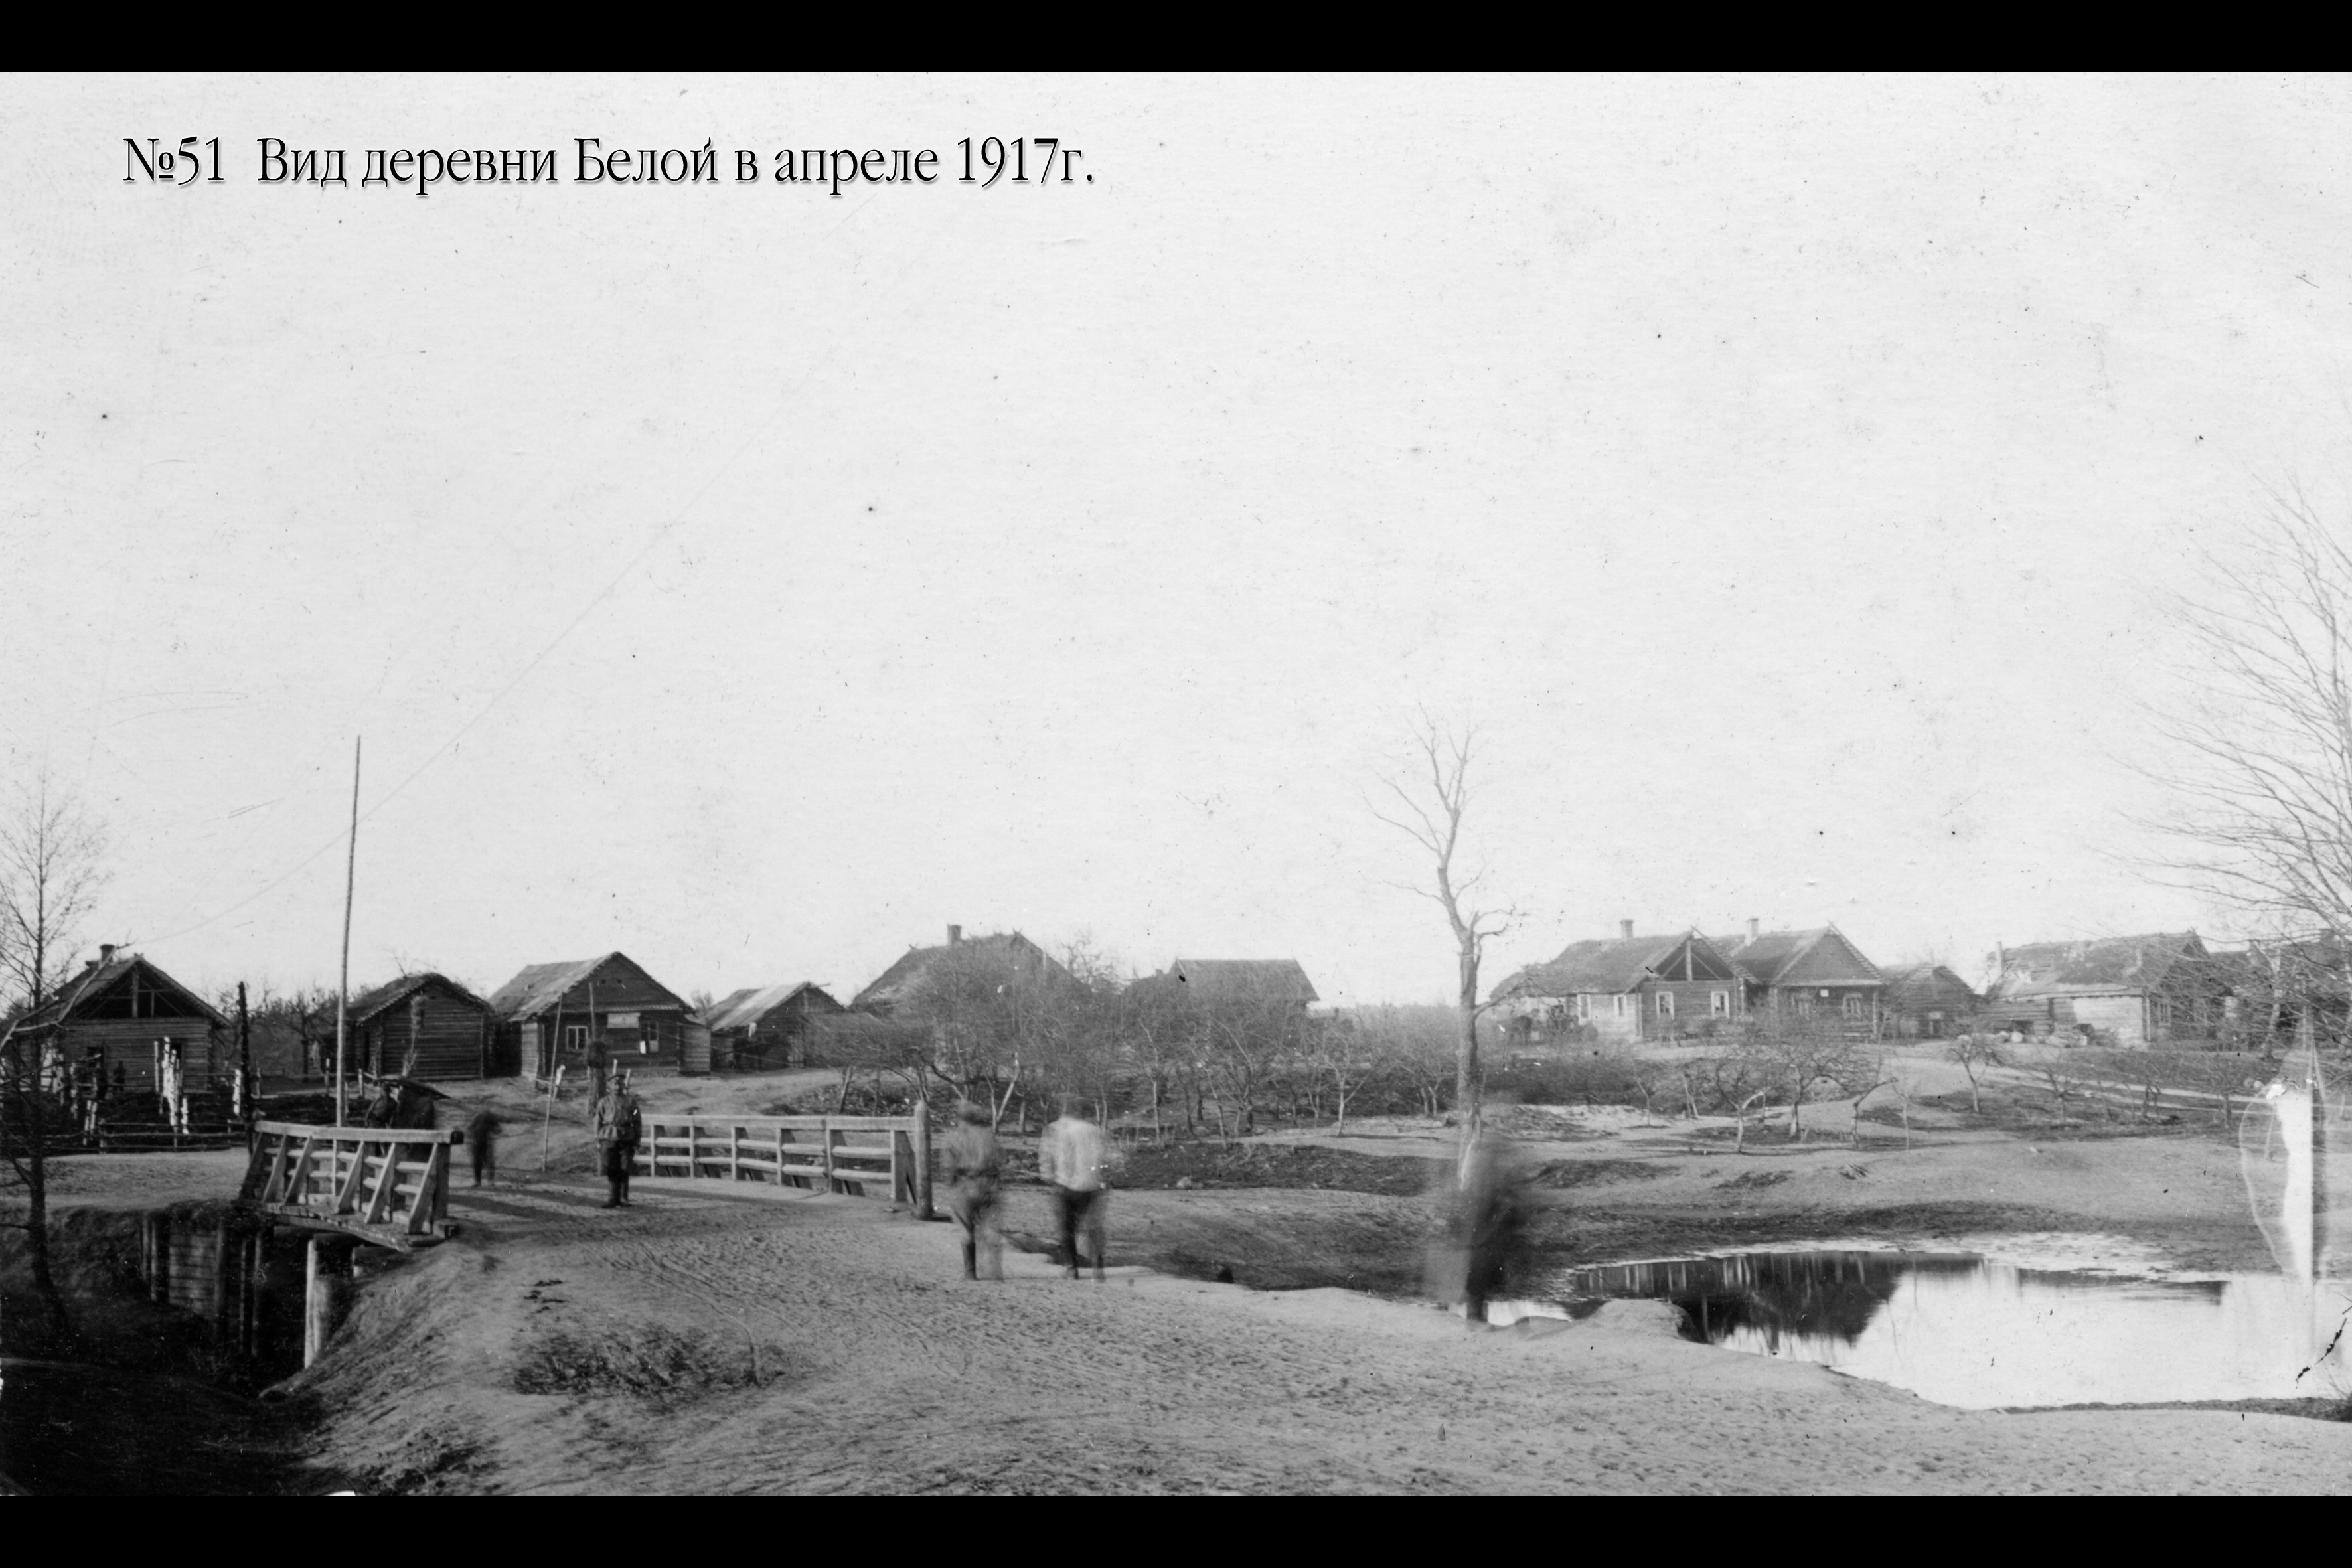 Baltosios kaimas. 1917 m. balandžio mėn.